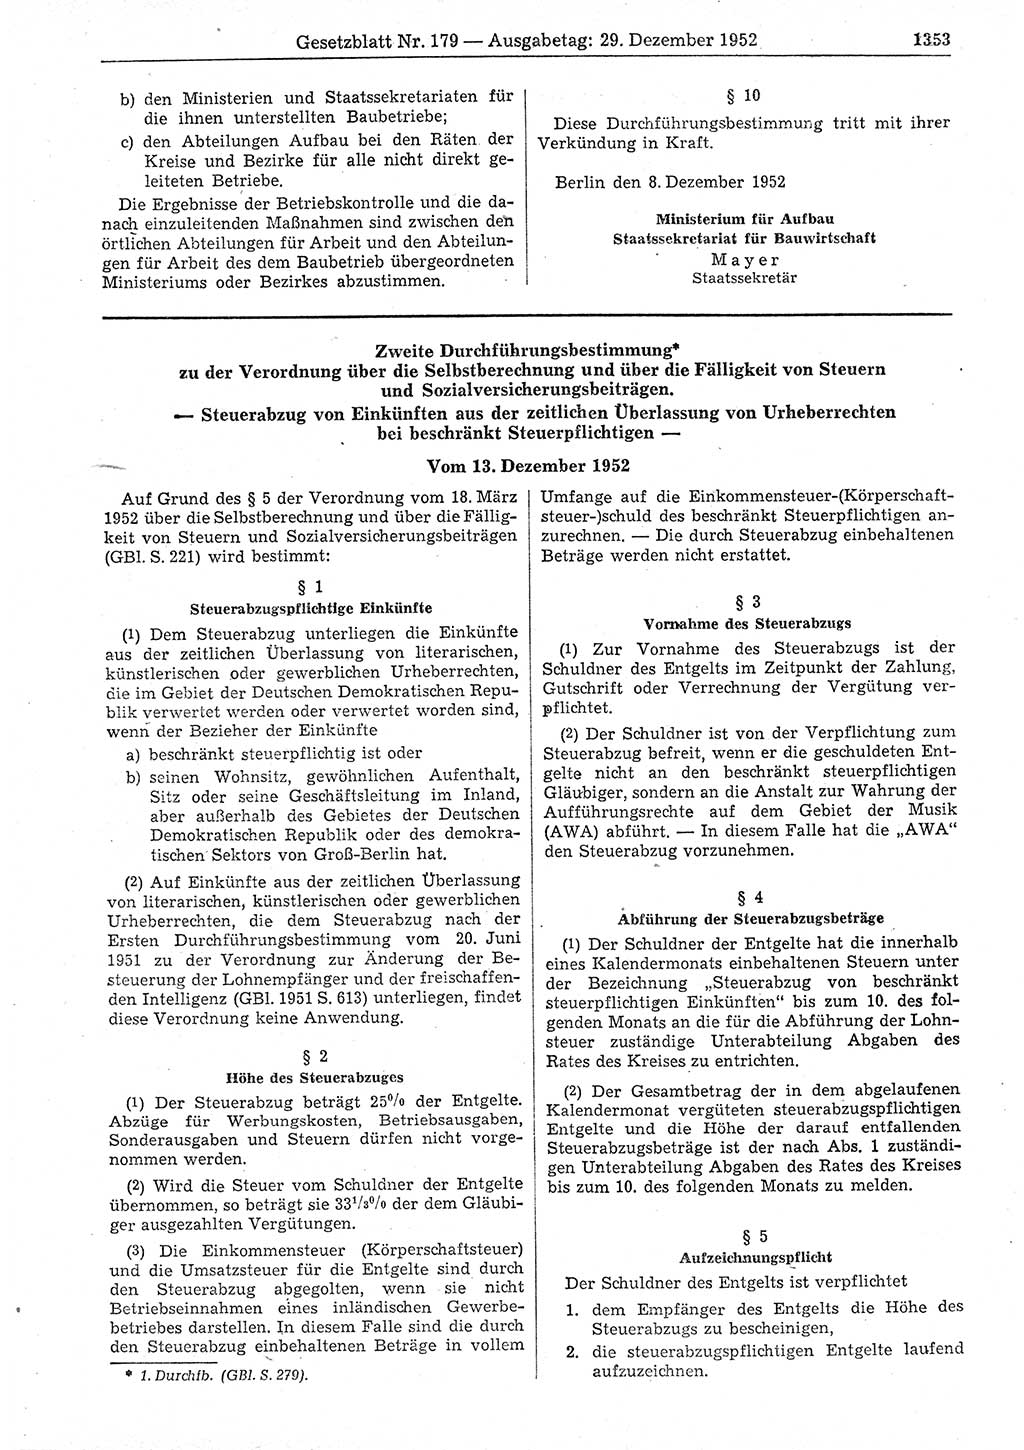 Gesetzblatt (GBl.) der Deutschen Demokratischen Republik (DDR) 1952, Seite 1353 (GBl. DDR 1952, S. 1353)